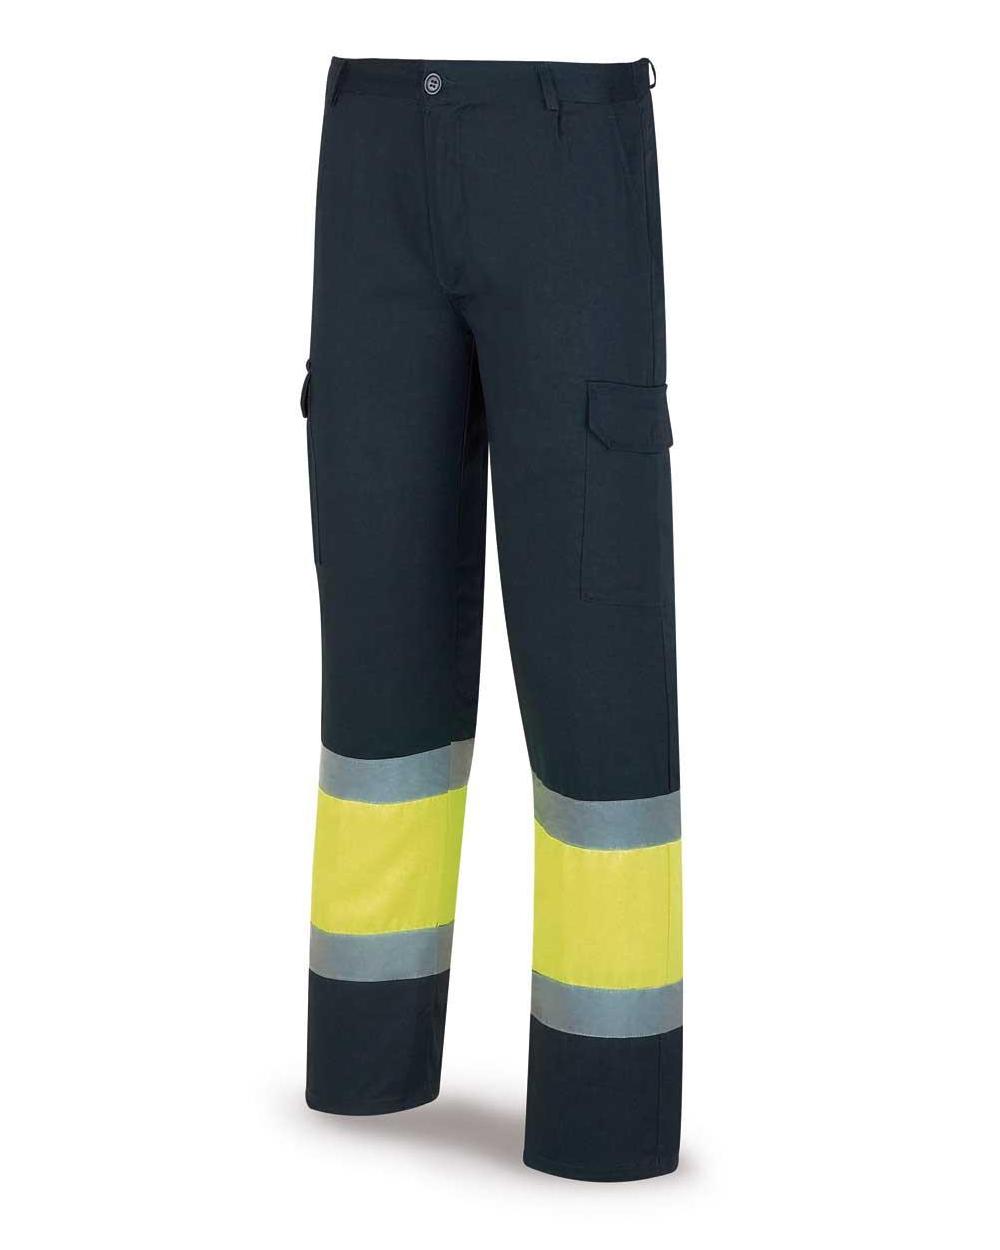 Comprar Pantalón Alta Visibilidad Acolchado Amarillo Azul 388-Pfy/Aa barato